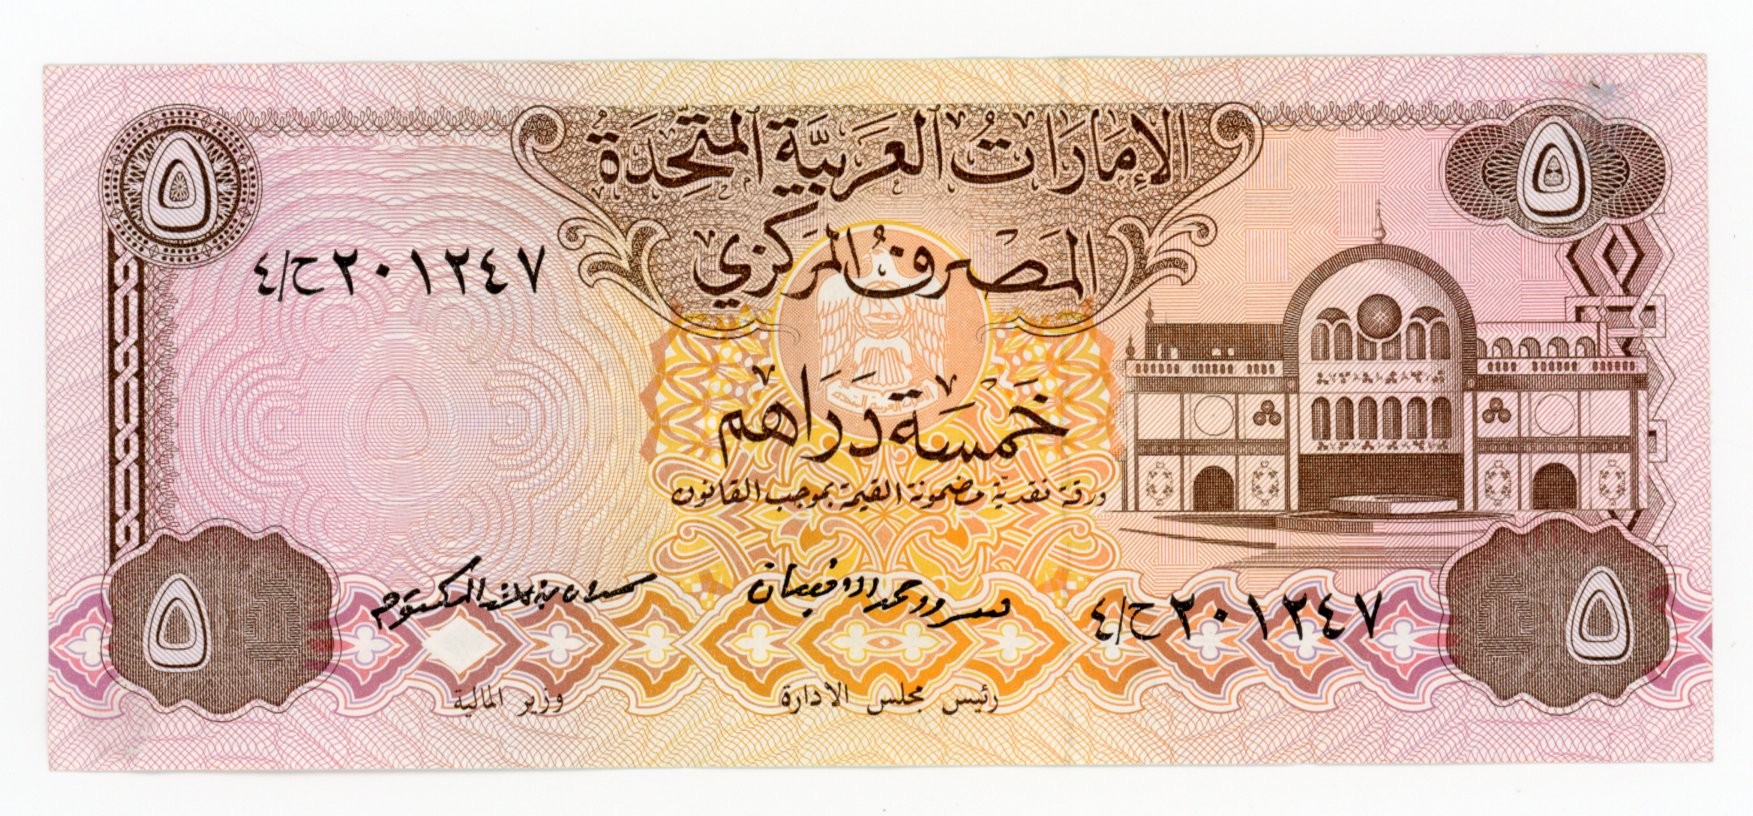 Курс обмена дирхам в дубае. Дирхам эмираты купюра. 5 Дирхам ОАЭ. 500 Дирхам ОАЭ банкнота. ОАЭ 50 дирхамов, 1996.